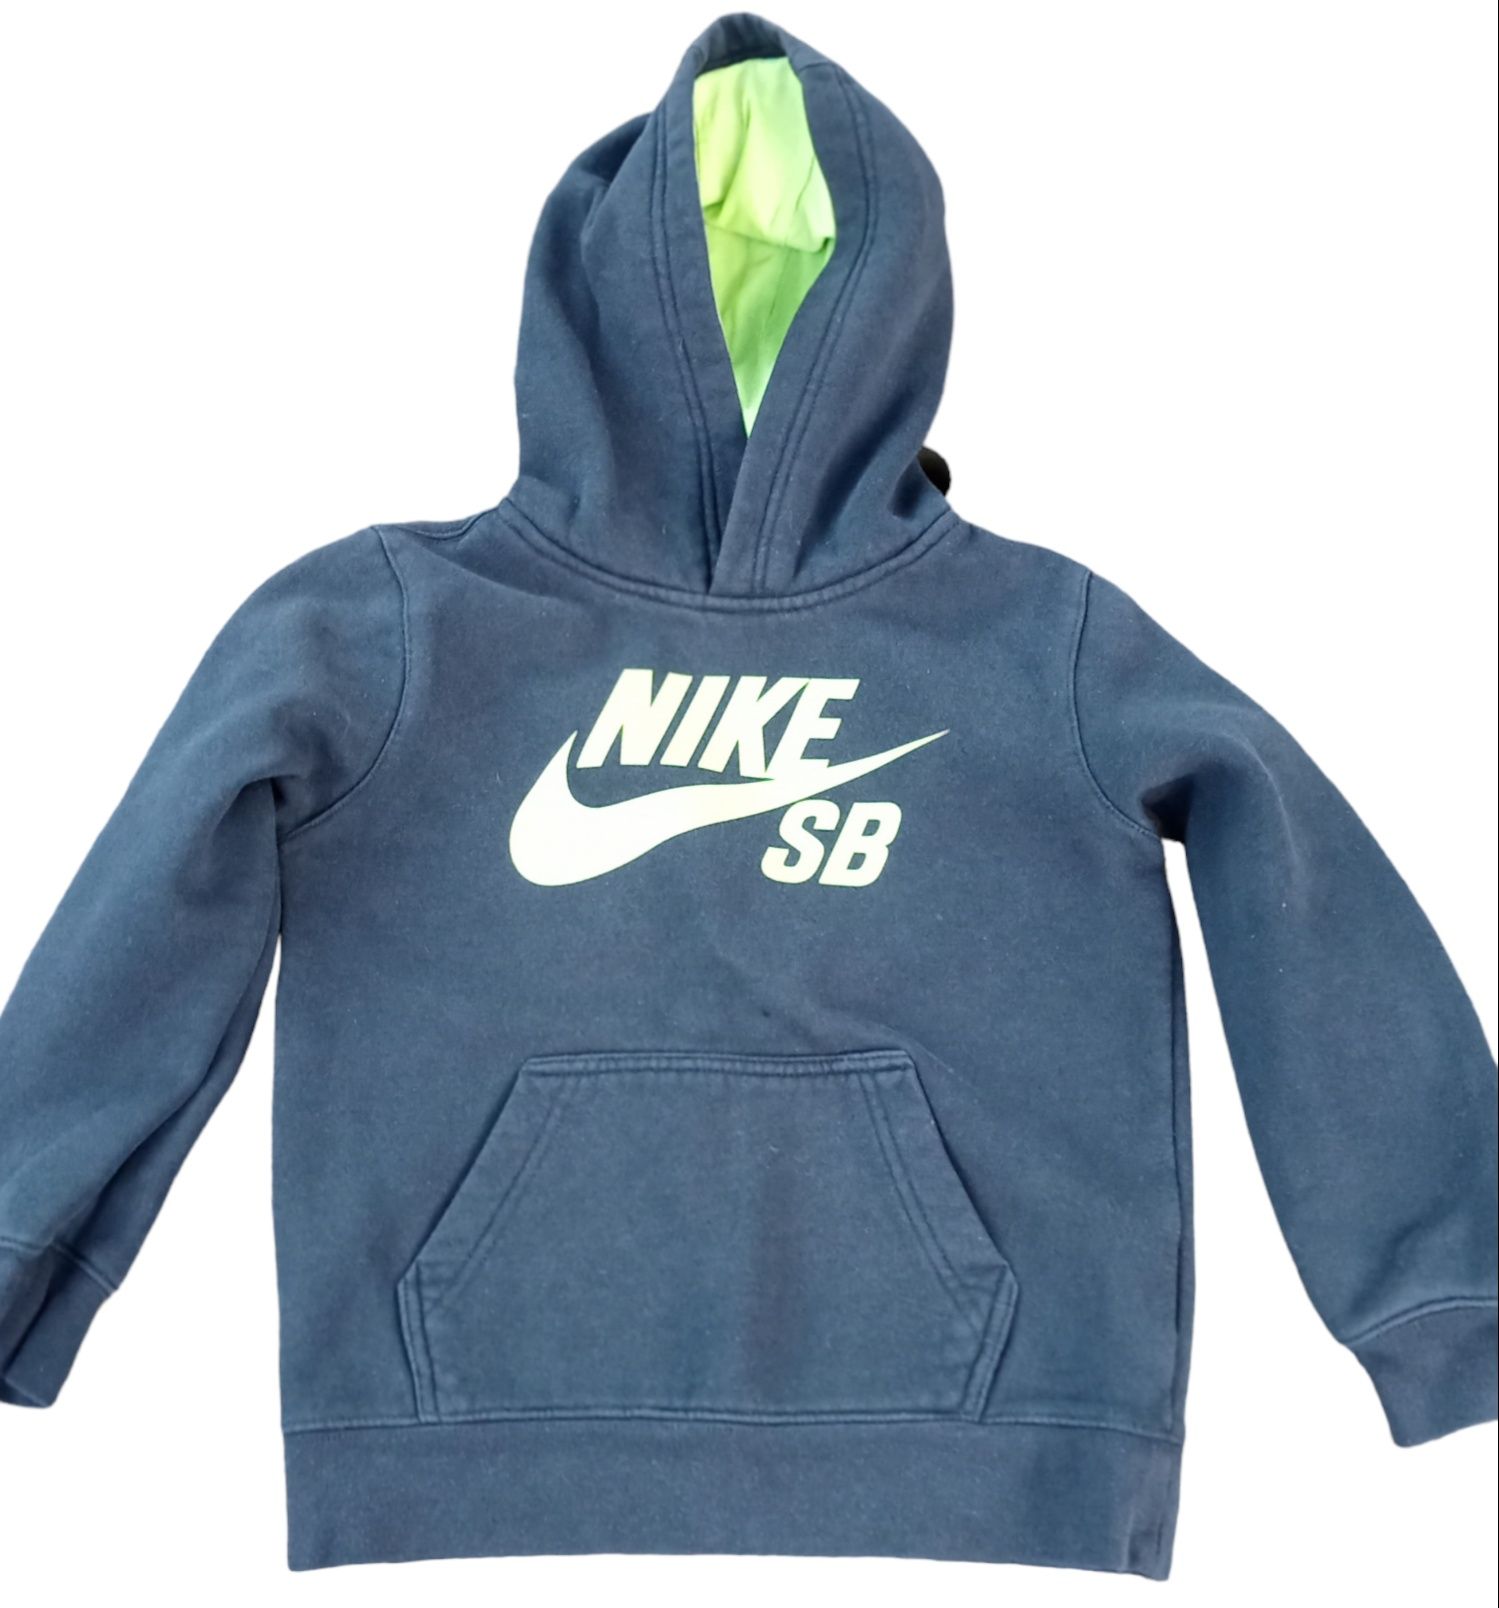 Bluza z kapturem Nike dla dziecka chłopca kangurka 110-116